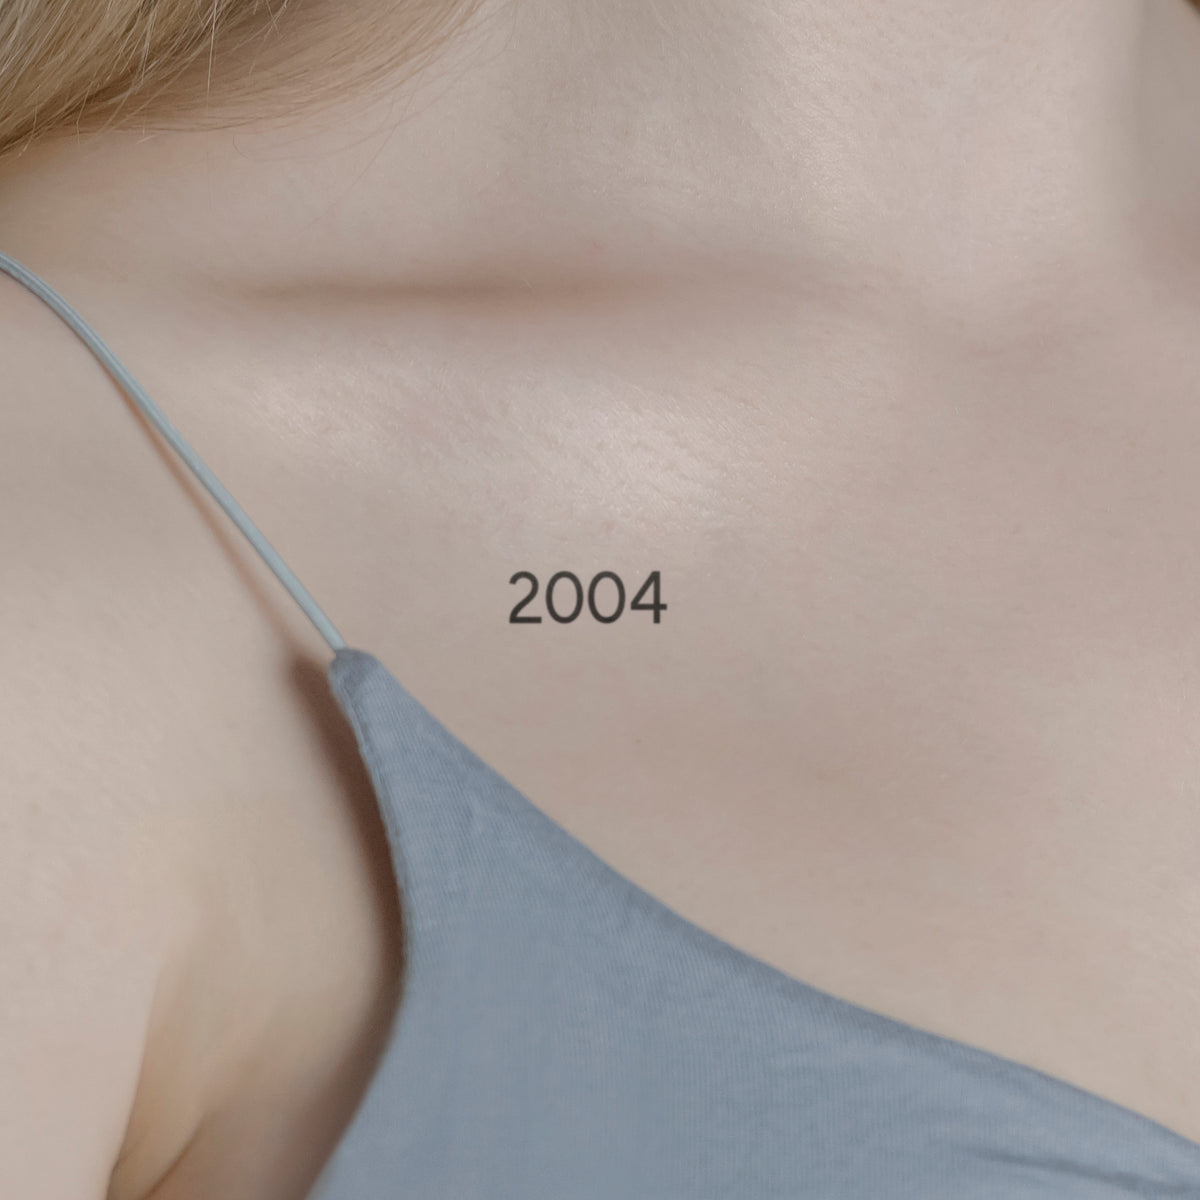 Zahlen Tattoo Geburtsjahr 2004 von minink, der Marke für temporäre Tattoos.